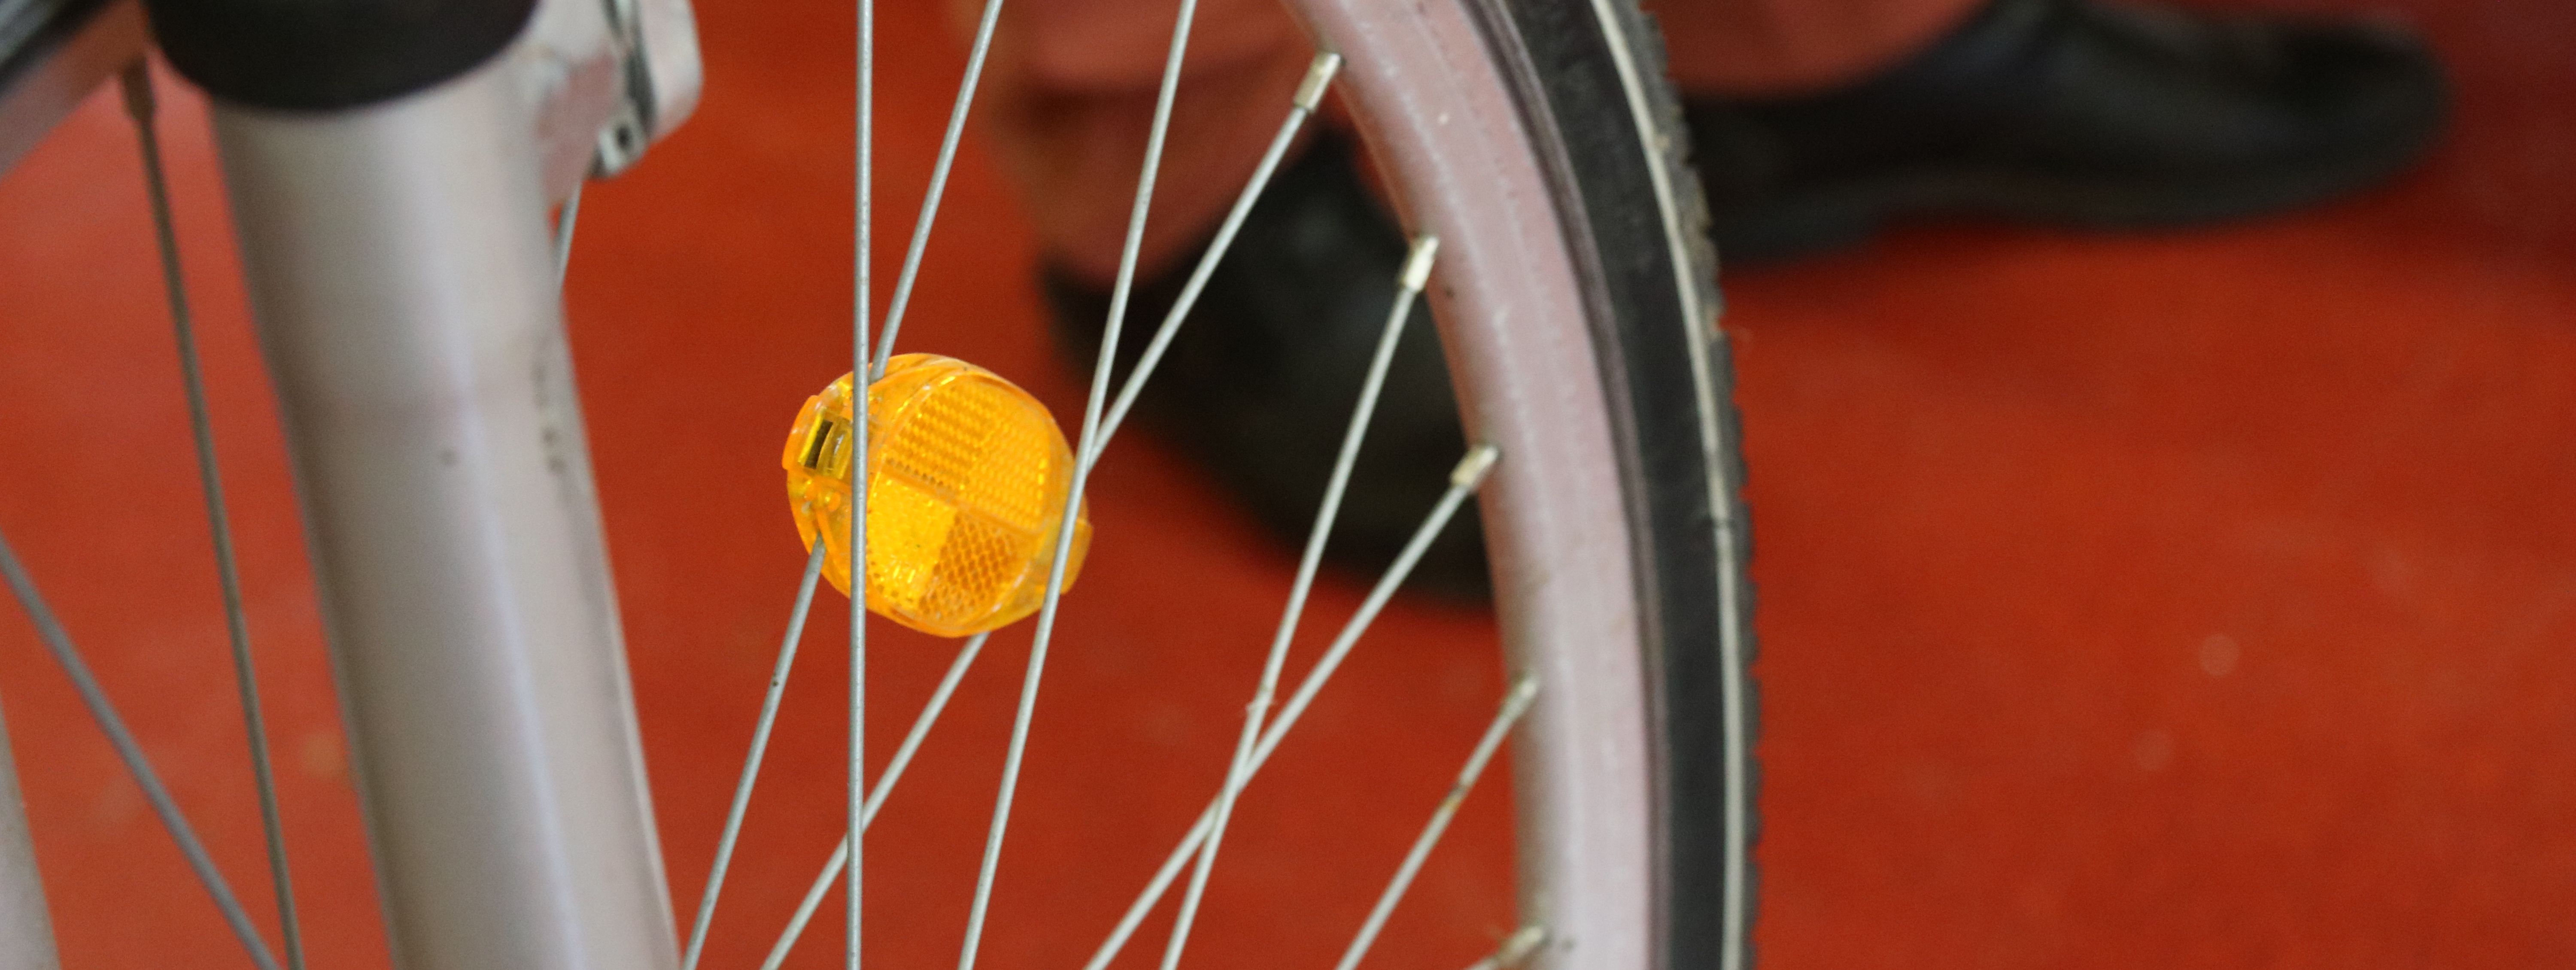 Das Speichenrad eines Fahrrades mit einem gelben Reflektor